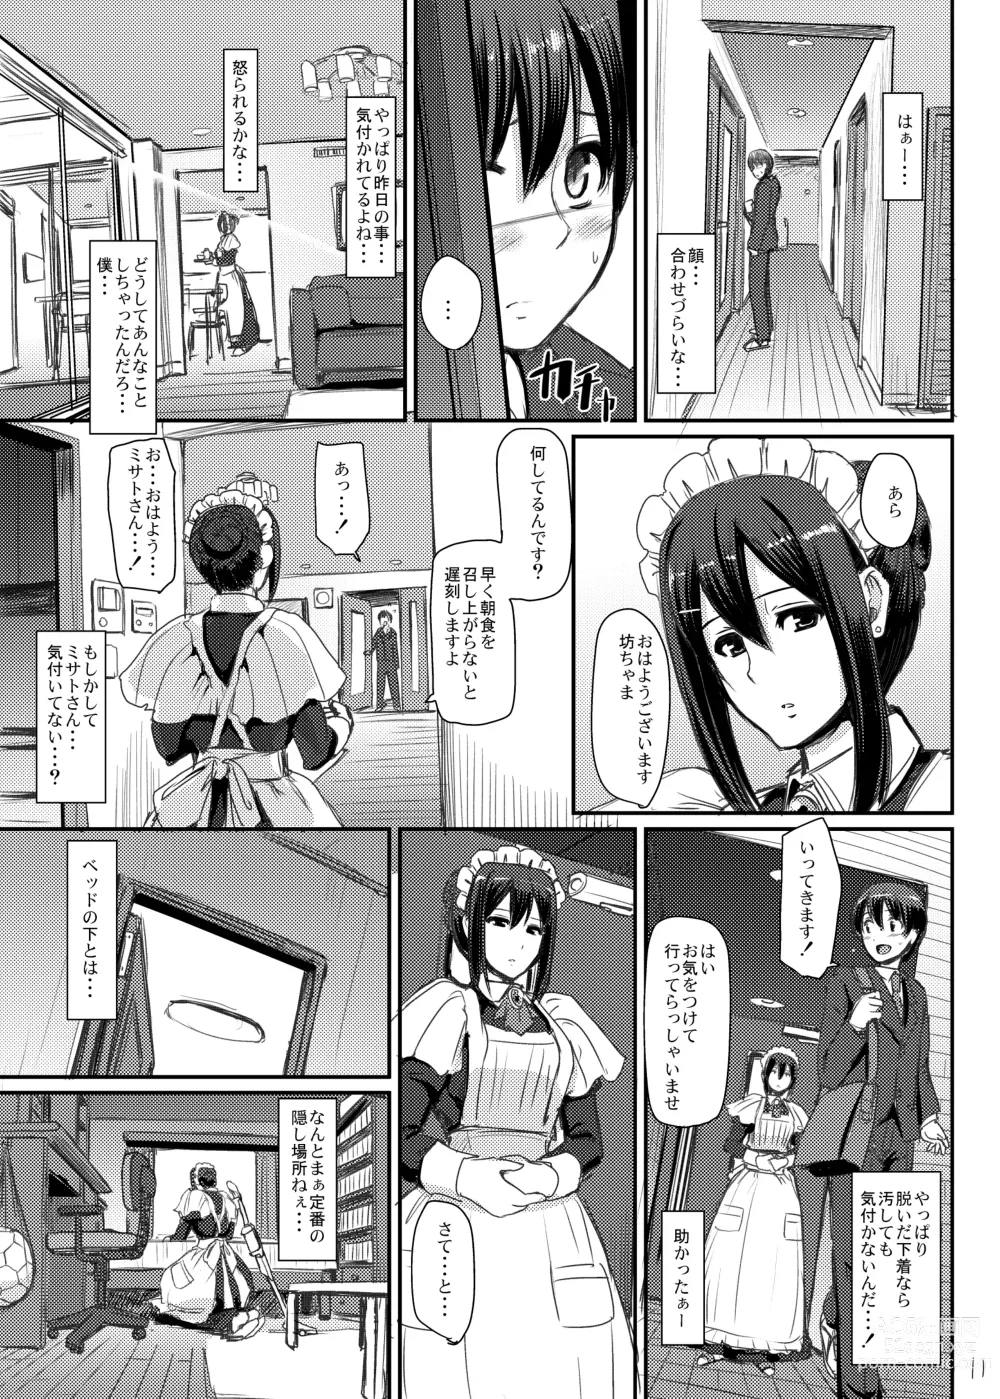 Page 12 of doujinshi Maid no Oshigoto.